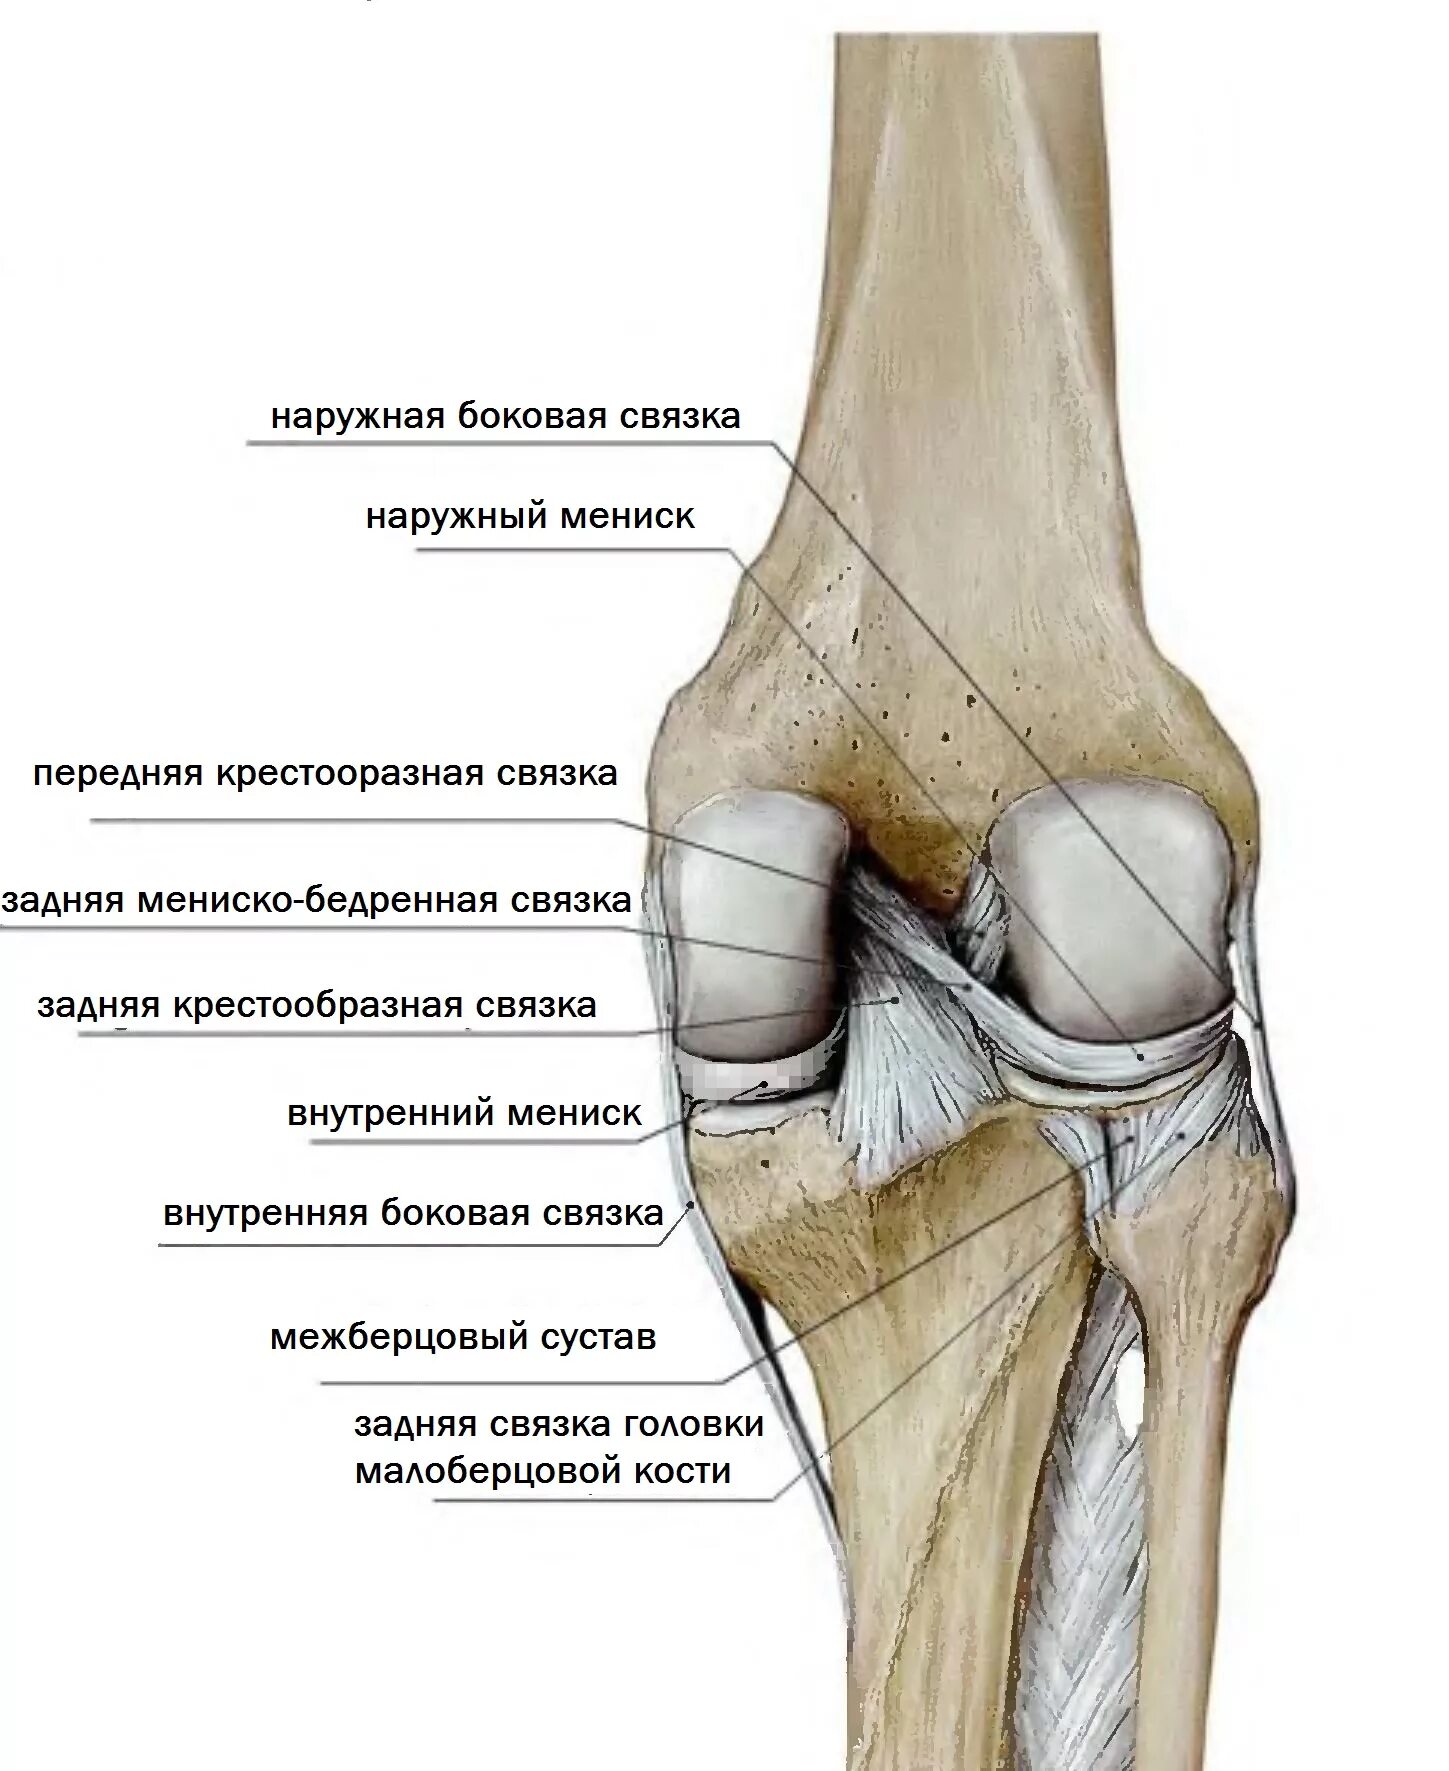 Мыщелок колена. Суставная поверхность надколенника медиально. Большеберцовая кость и коленный сустав. Задняя связка головки малоберцовой кости. Коленный сустав малоберцовая кость.